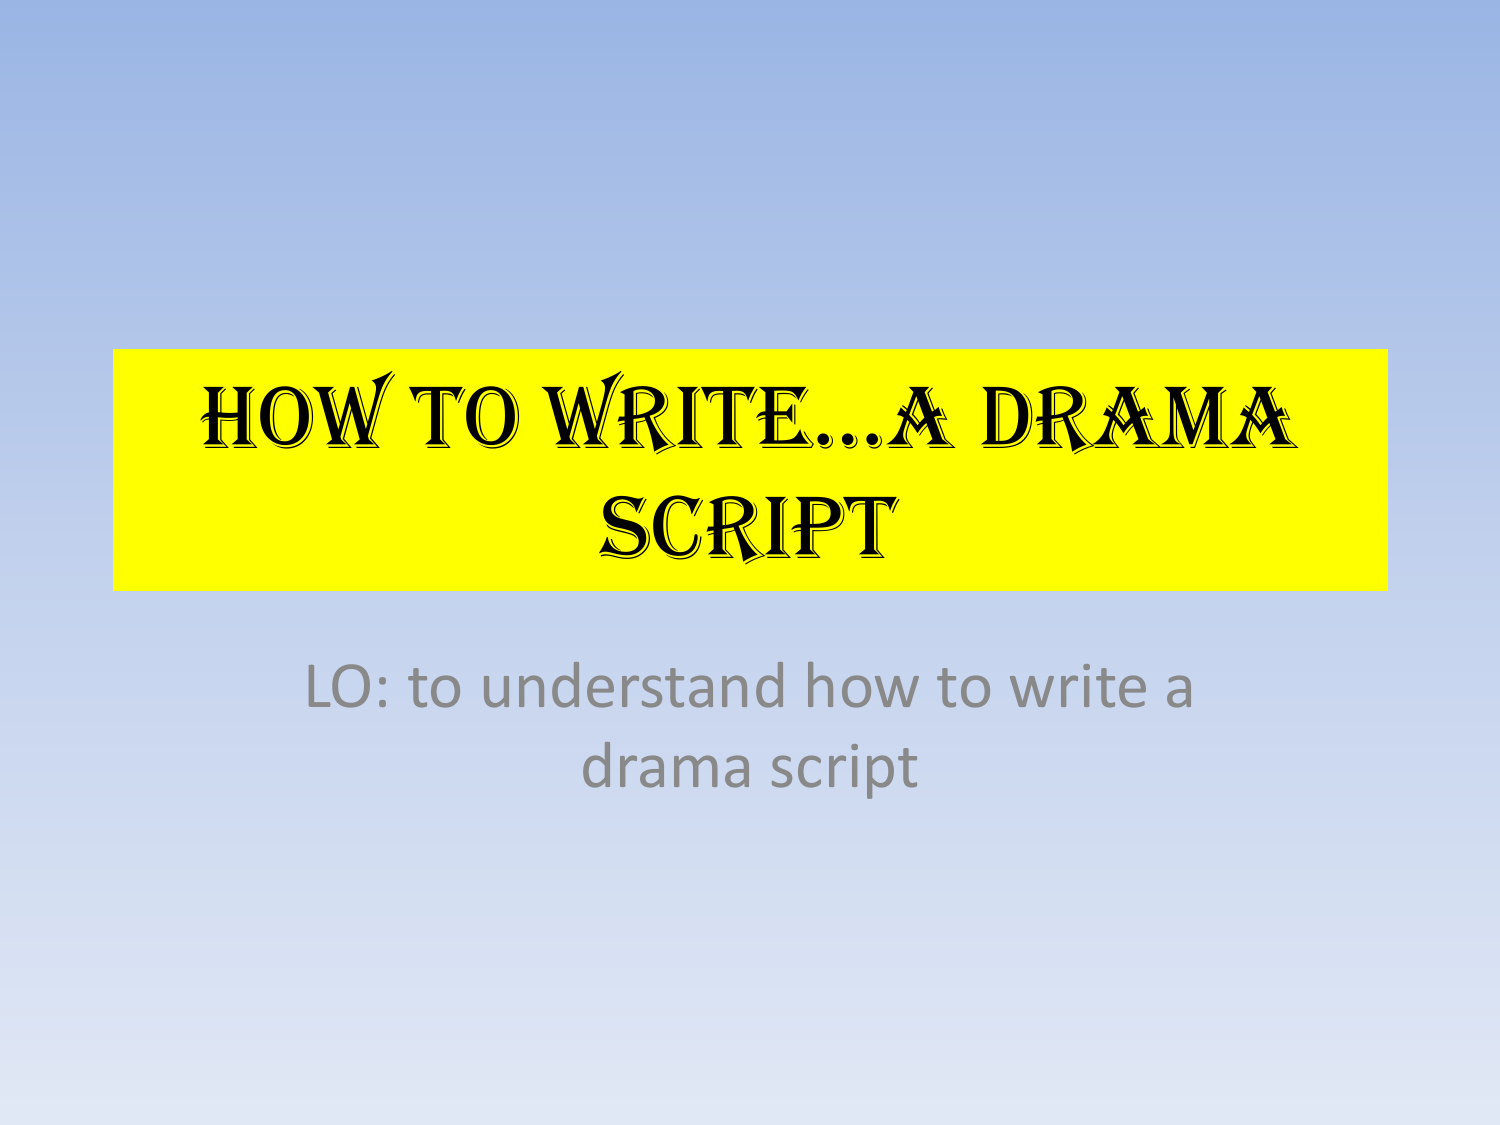 How to write*a drama script - Miss Irwin